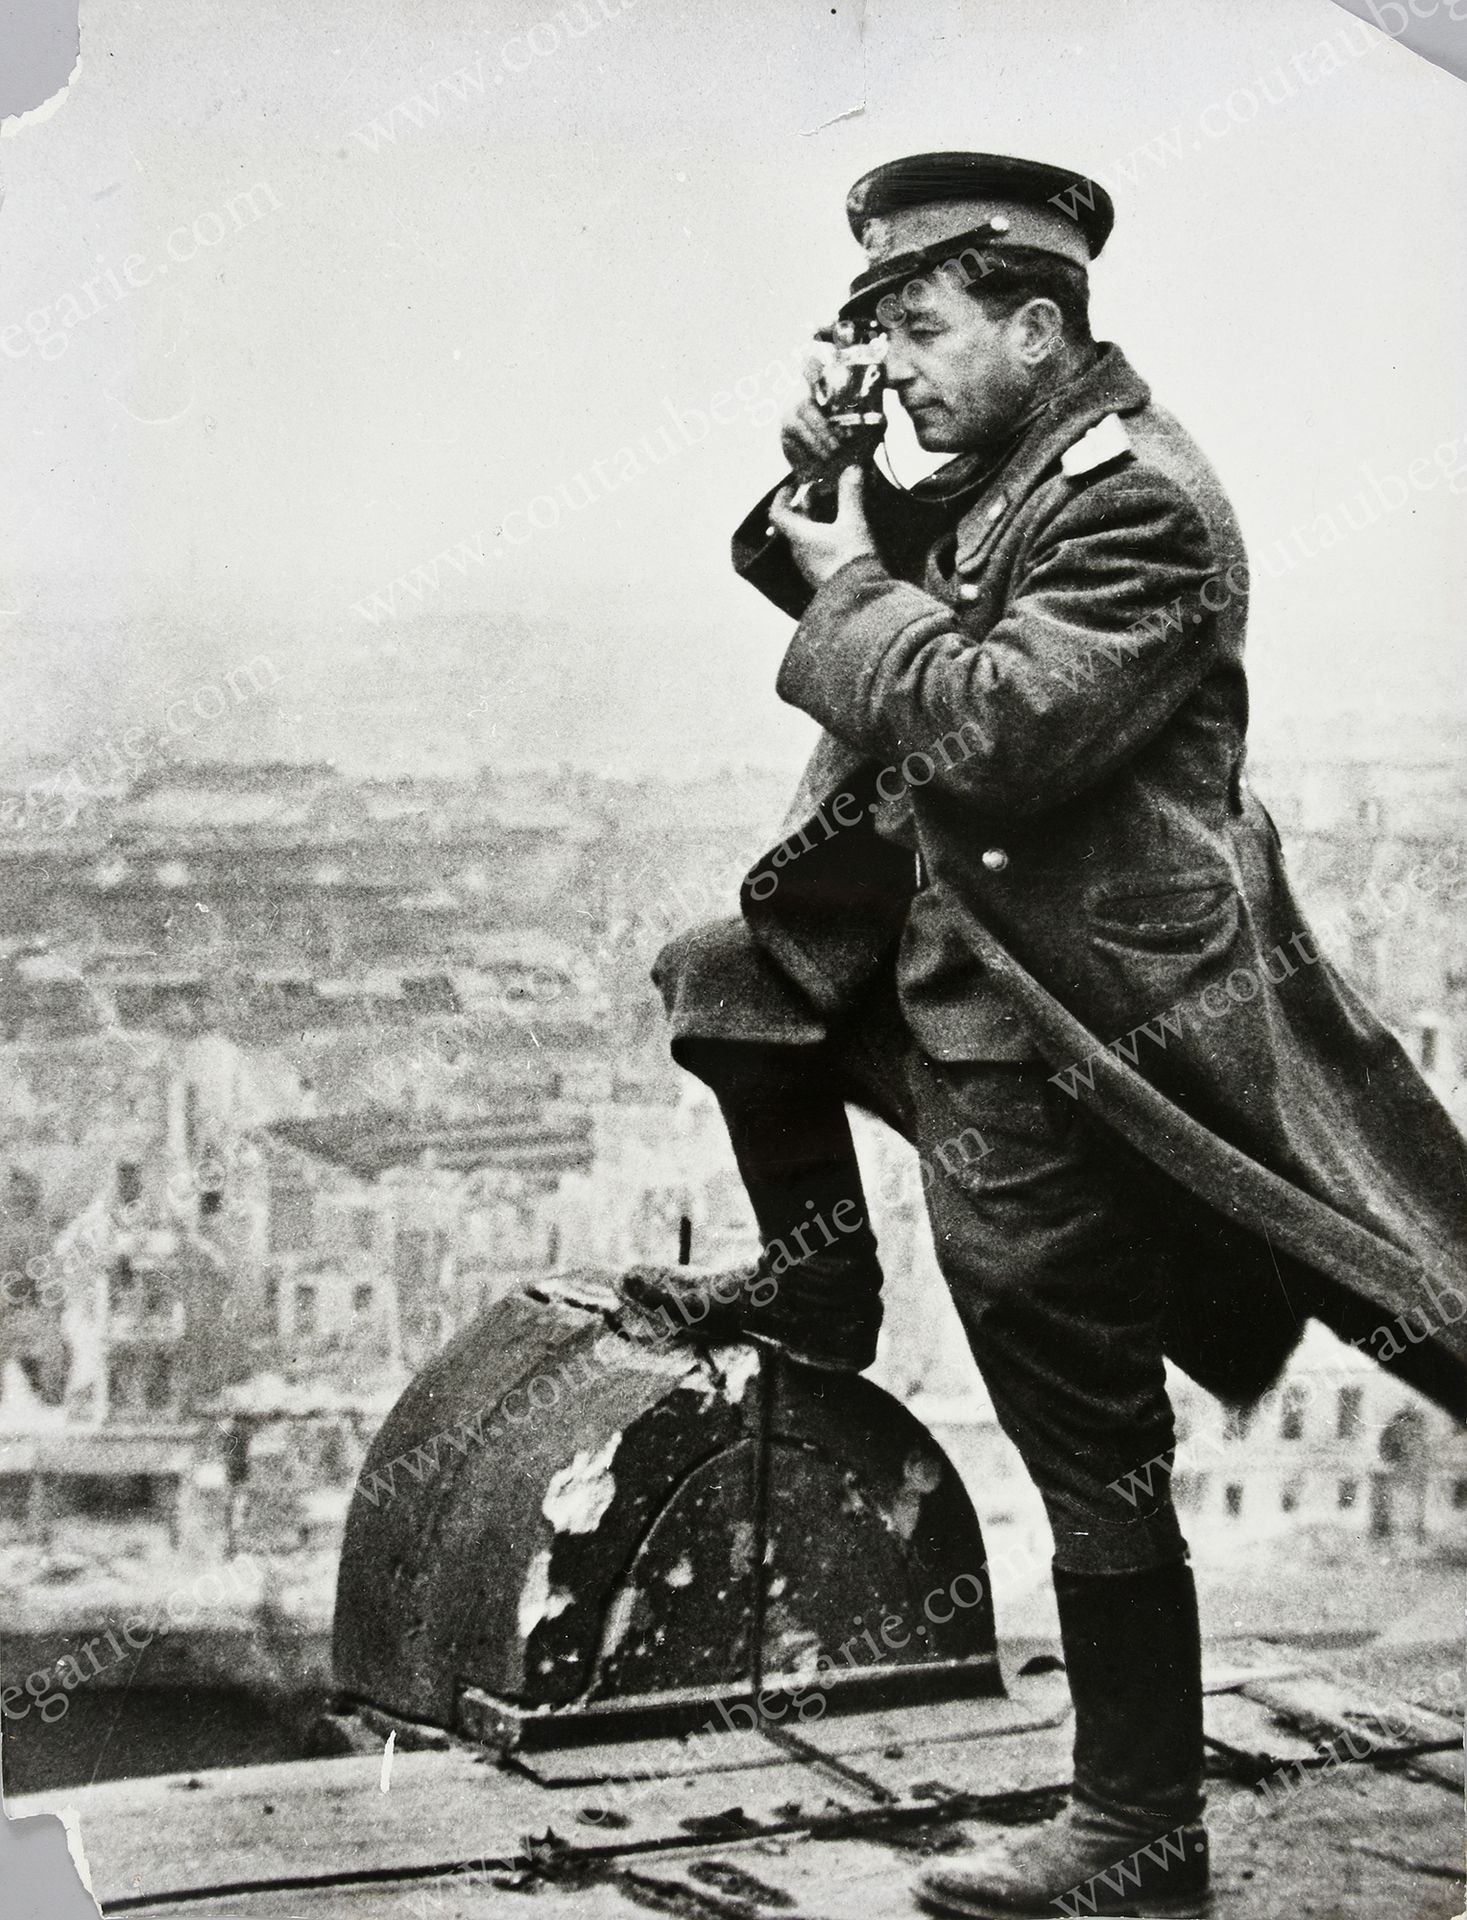 INCONNU. 摄影师马克-雷德金（1908-1987），1945年5月2日在柏林国会大厦的屋顶上。
银版画。
H. : 60, 5 cm - W. : 44&hellip;